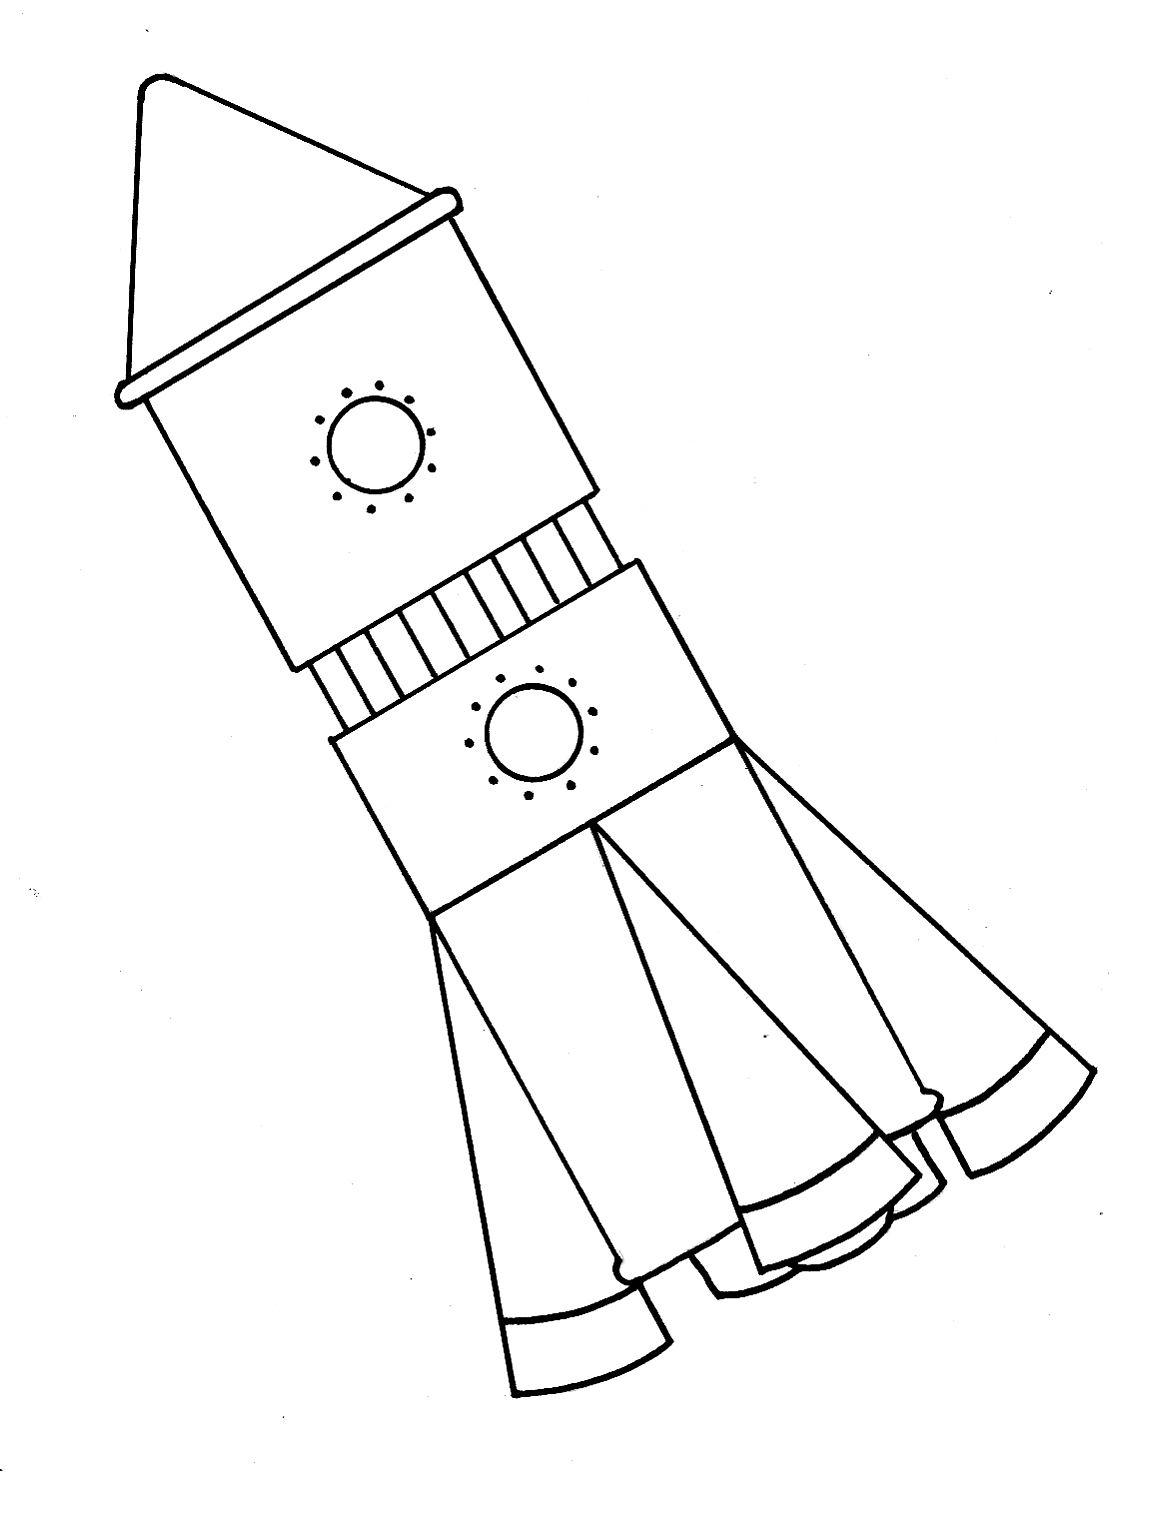 Ракета рисунок. Ракета раскраска для детей. Ракета рисунок для детей. Ракета из геометрических фигур для детей 5-6 лет. Ракета рисунок для детей карандашом